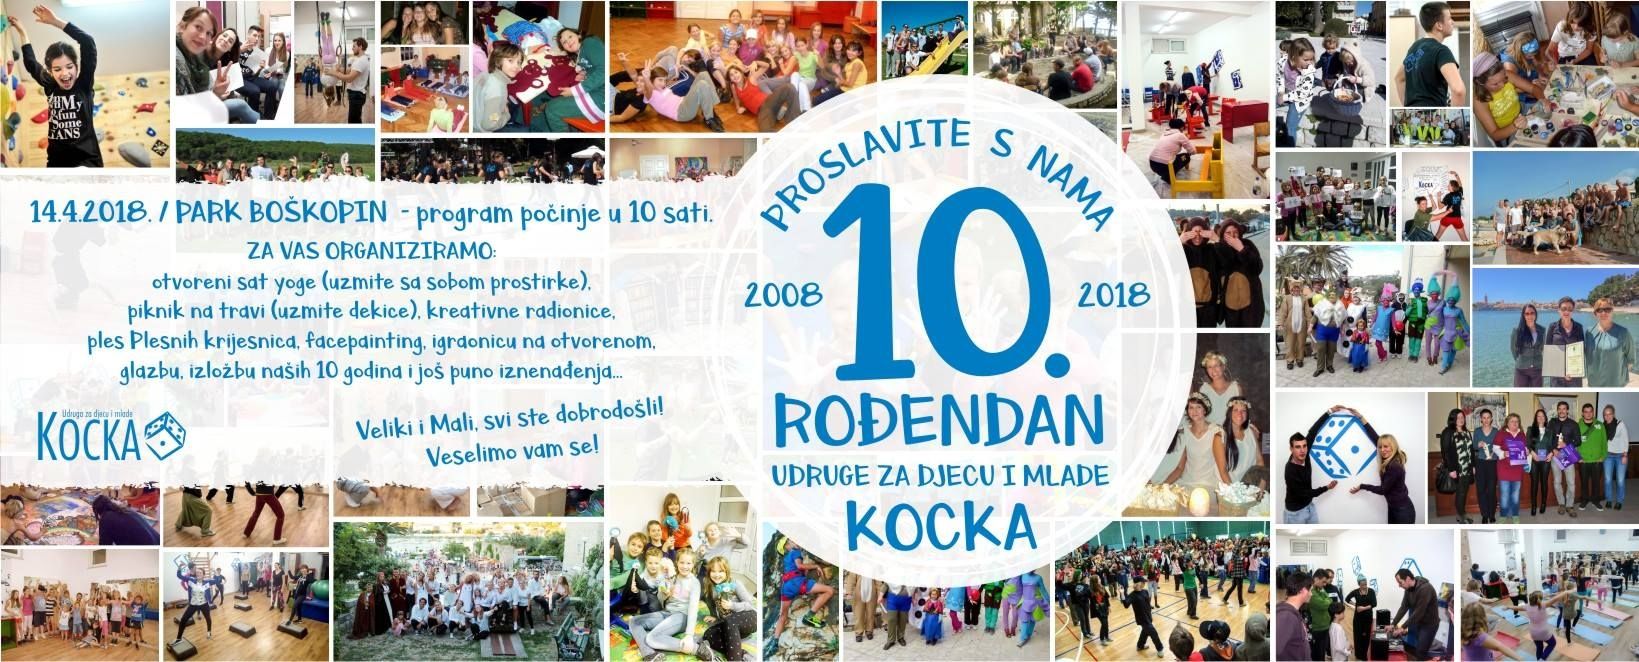 KOCKIN subotnji rođendanski party za sve otočane! / (sub.) 14.4.2018. – Park Boškopini od 10h